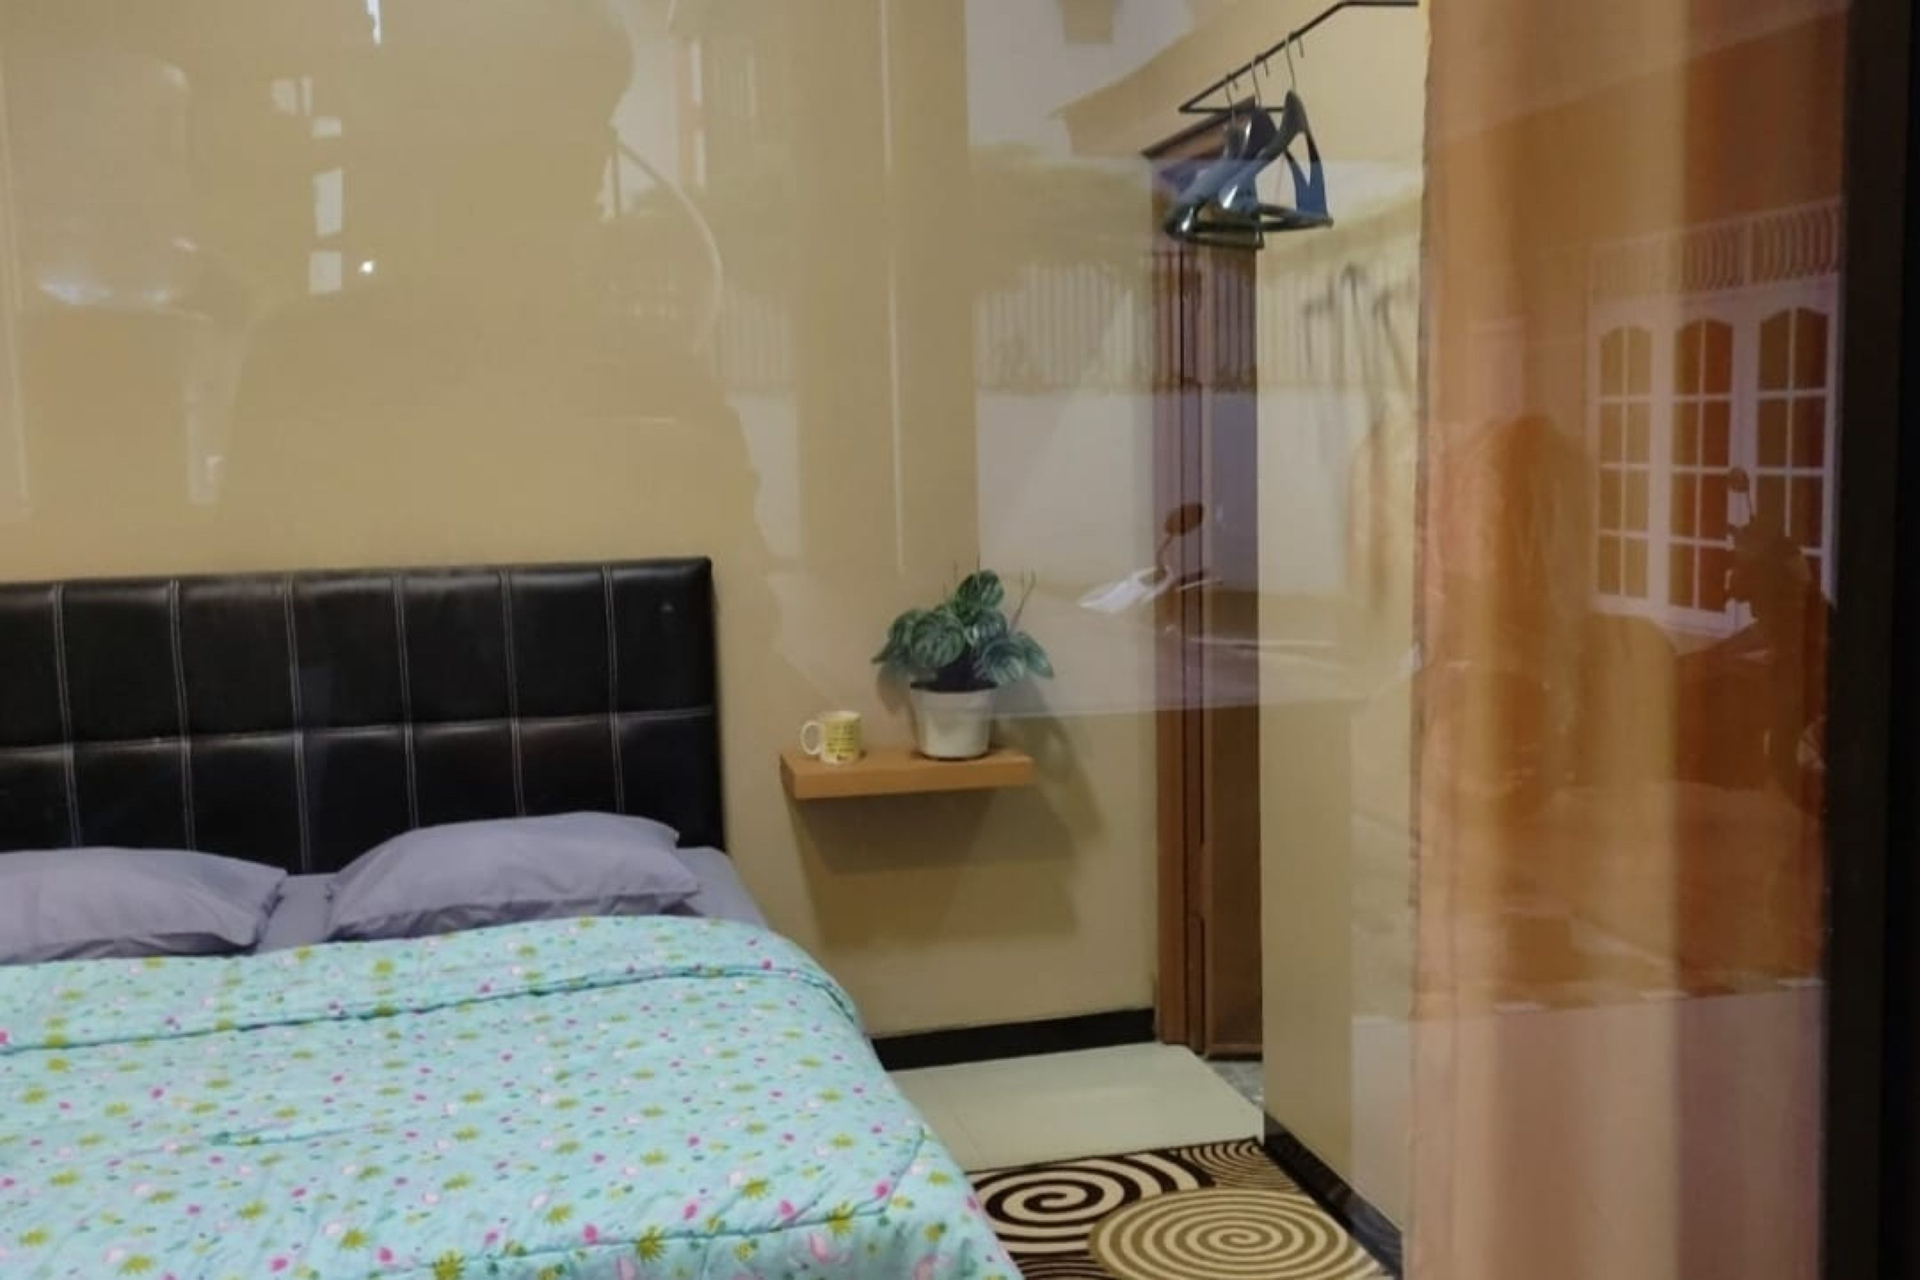 Bedroom 4, Villa Homesate 2, Karanganyar